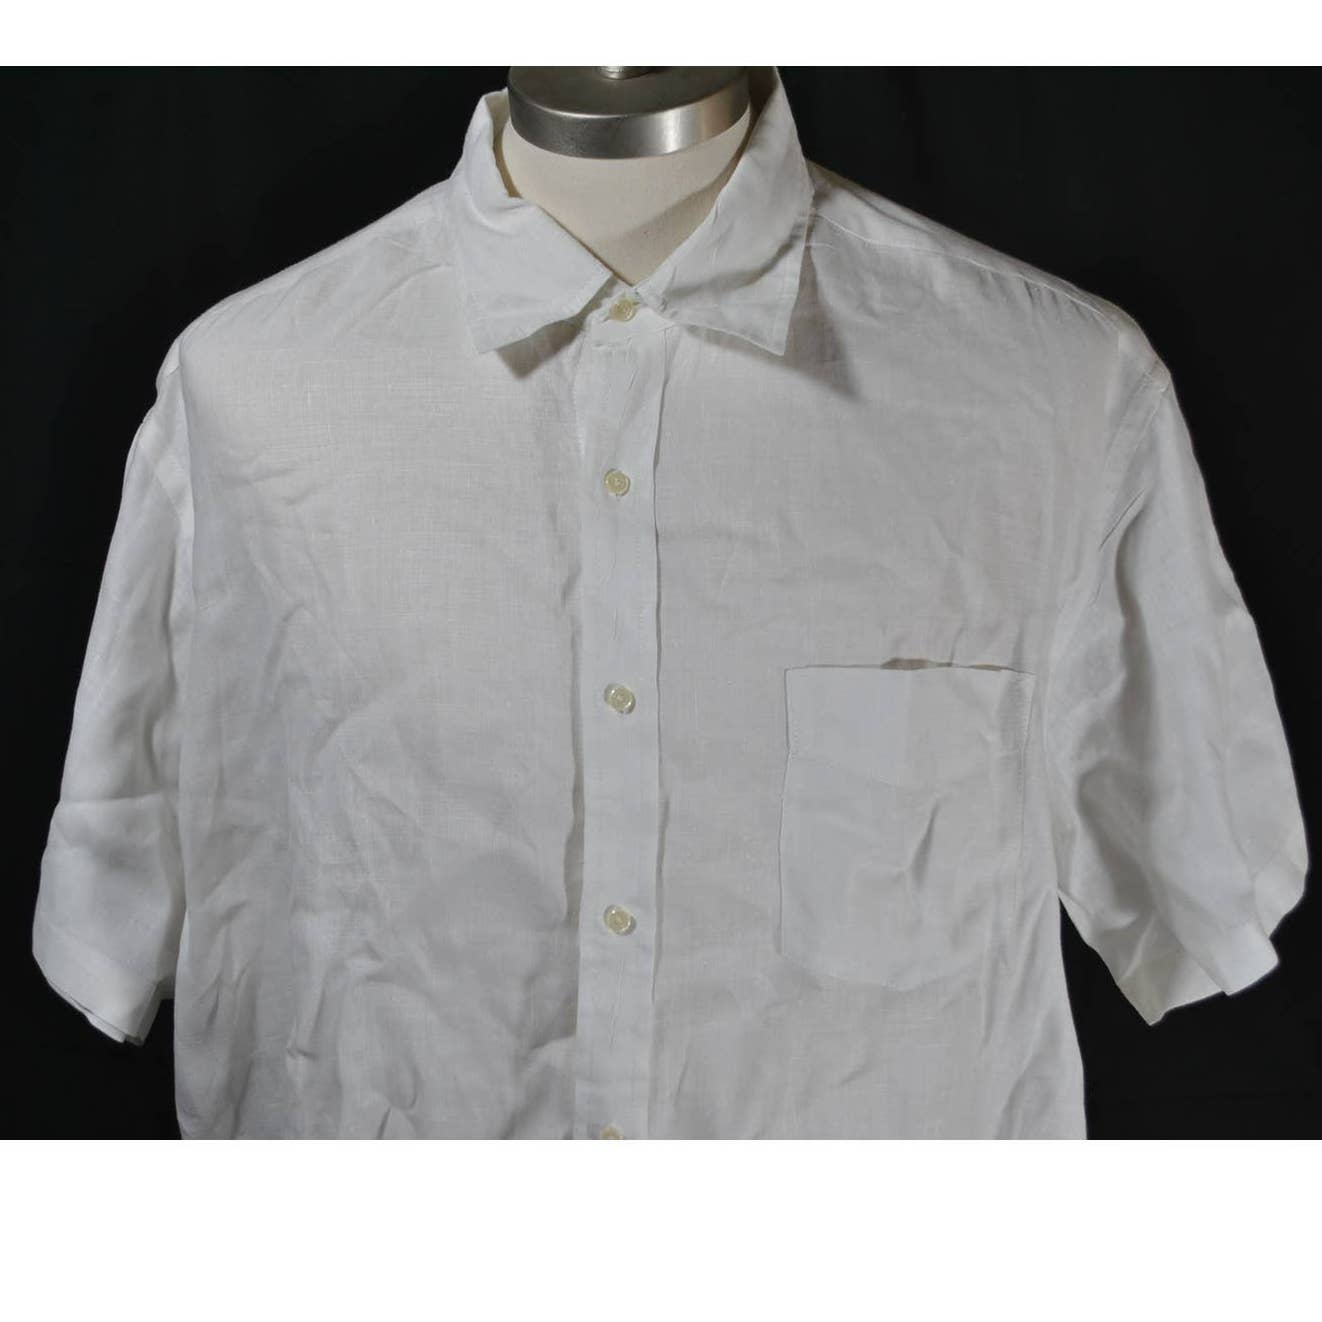 J.Crew White Linen Short Sleeve Button Up Shirt - XL